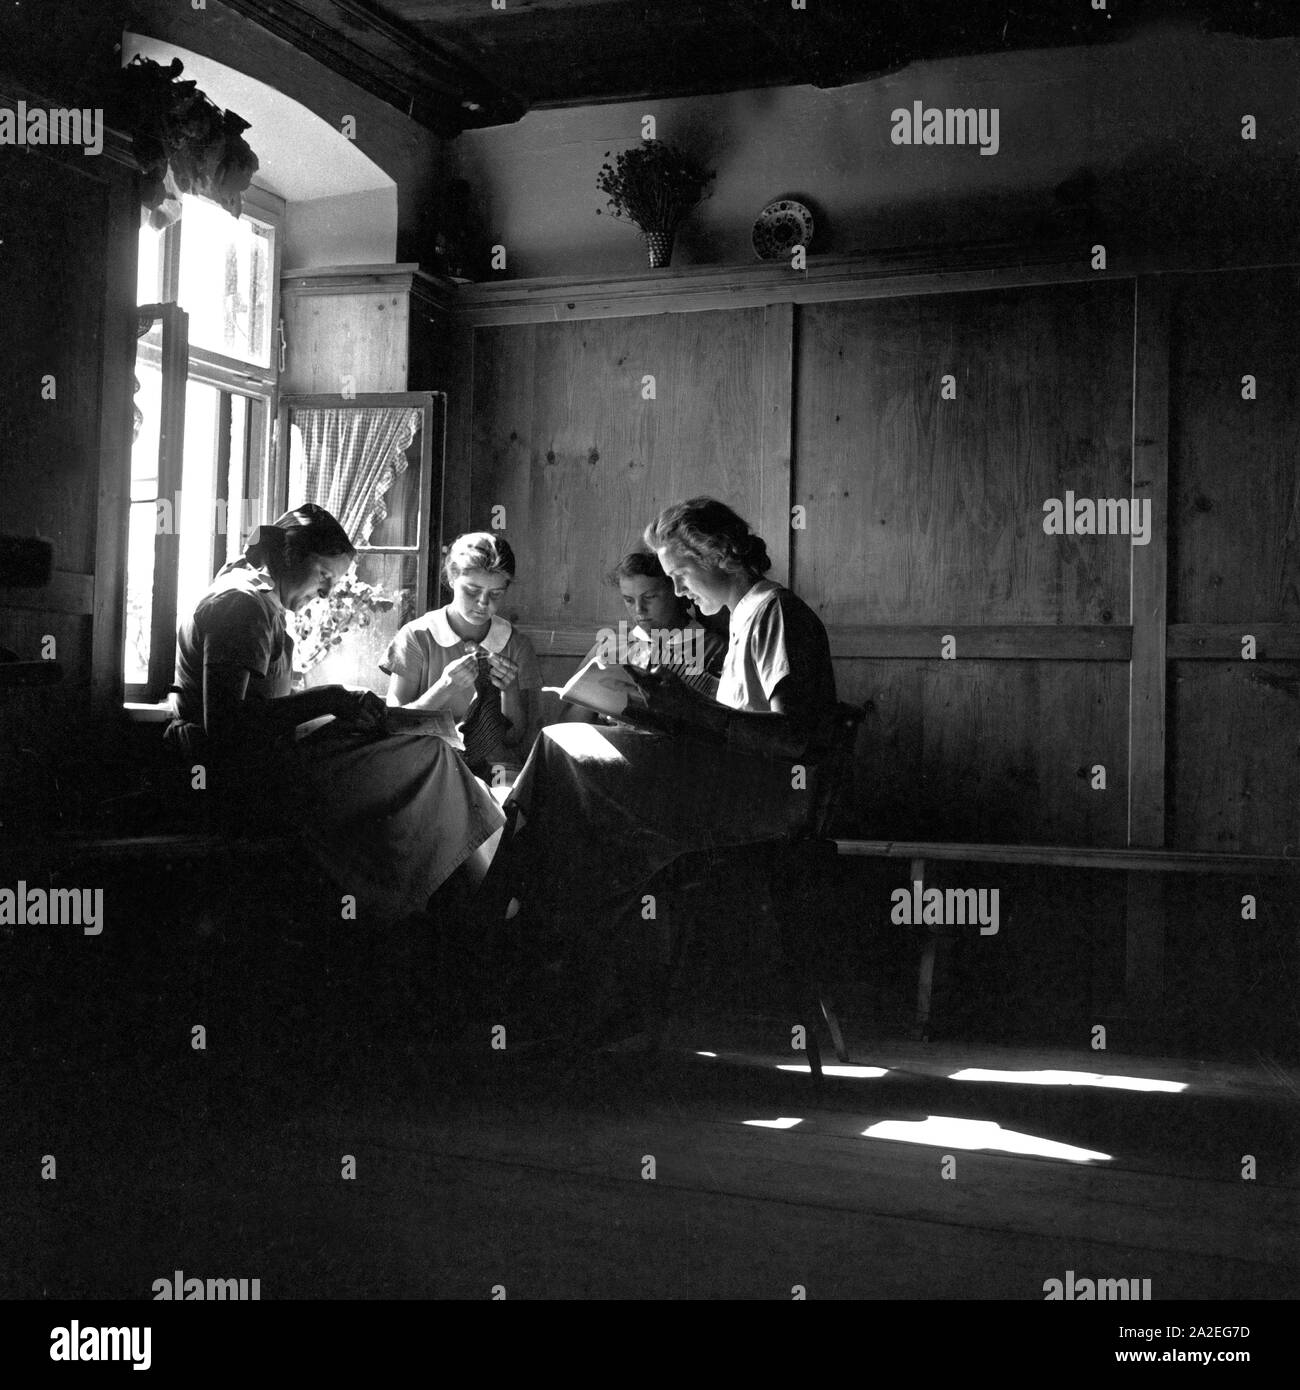 Frauen beim Lesen beim Frauenarbeitsdienst a Kempten, Deutschland 1930er Jahre. Le donne la lettura durante una pausa a manodopera femminile a Kempten, Germania 1930s. Foto Stock